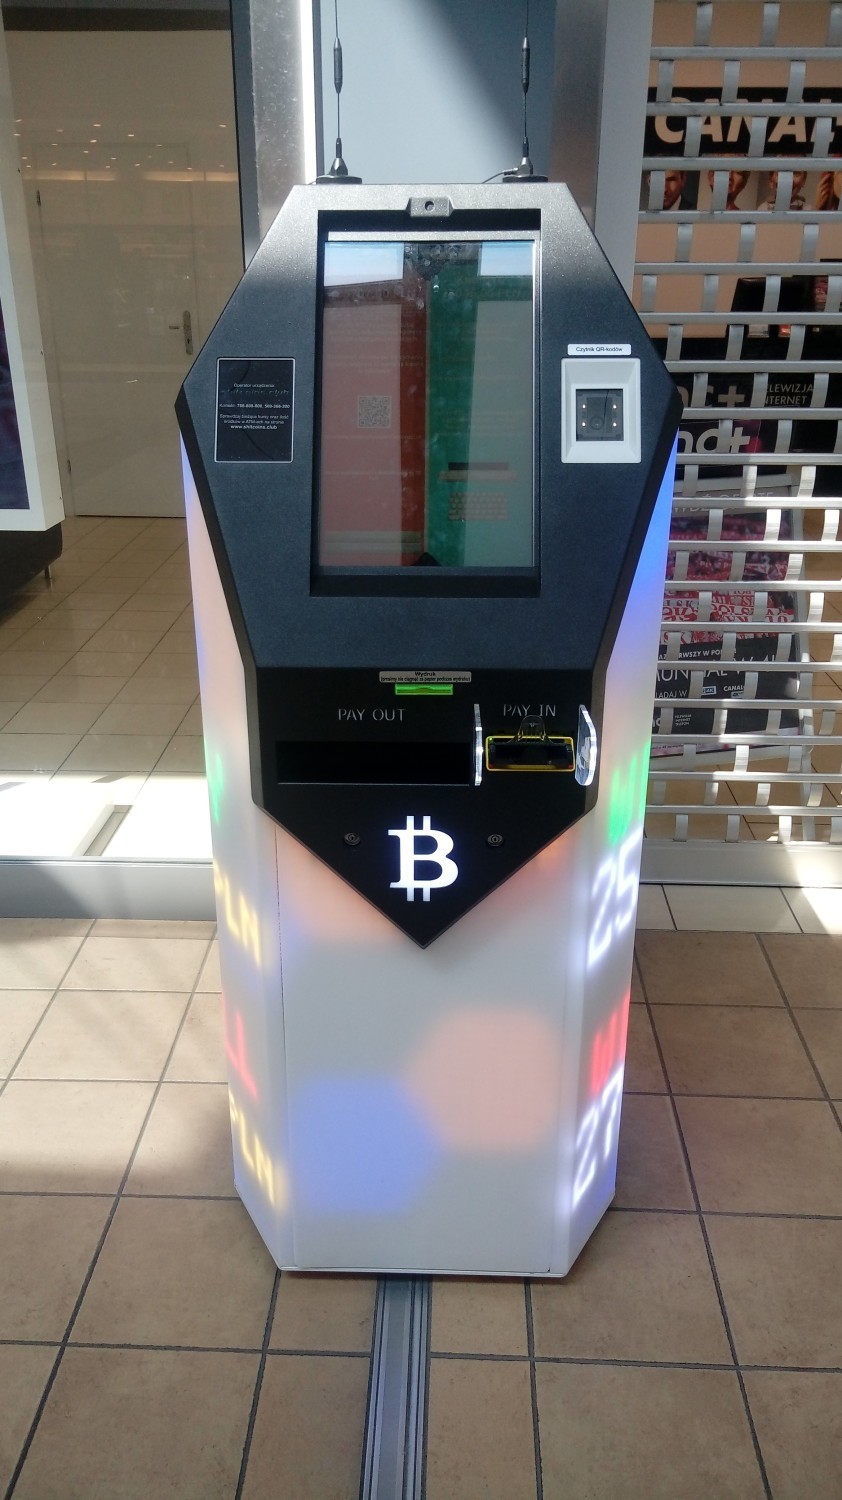 Pojawił się kolejny automat bitcoin'owy. Stanął w jednym z centrów handlowych